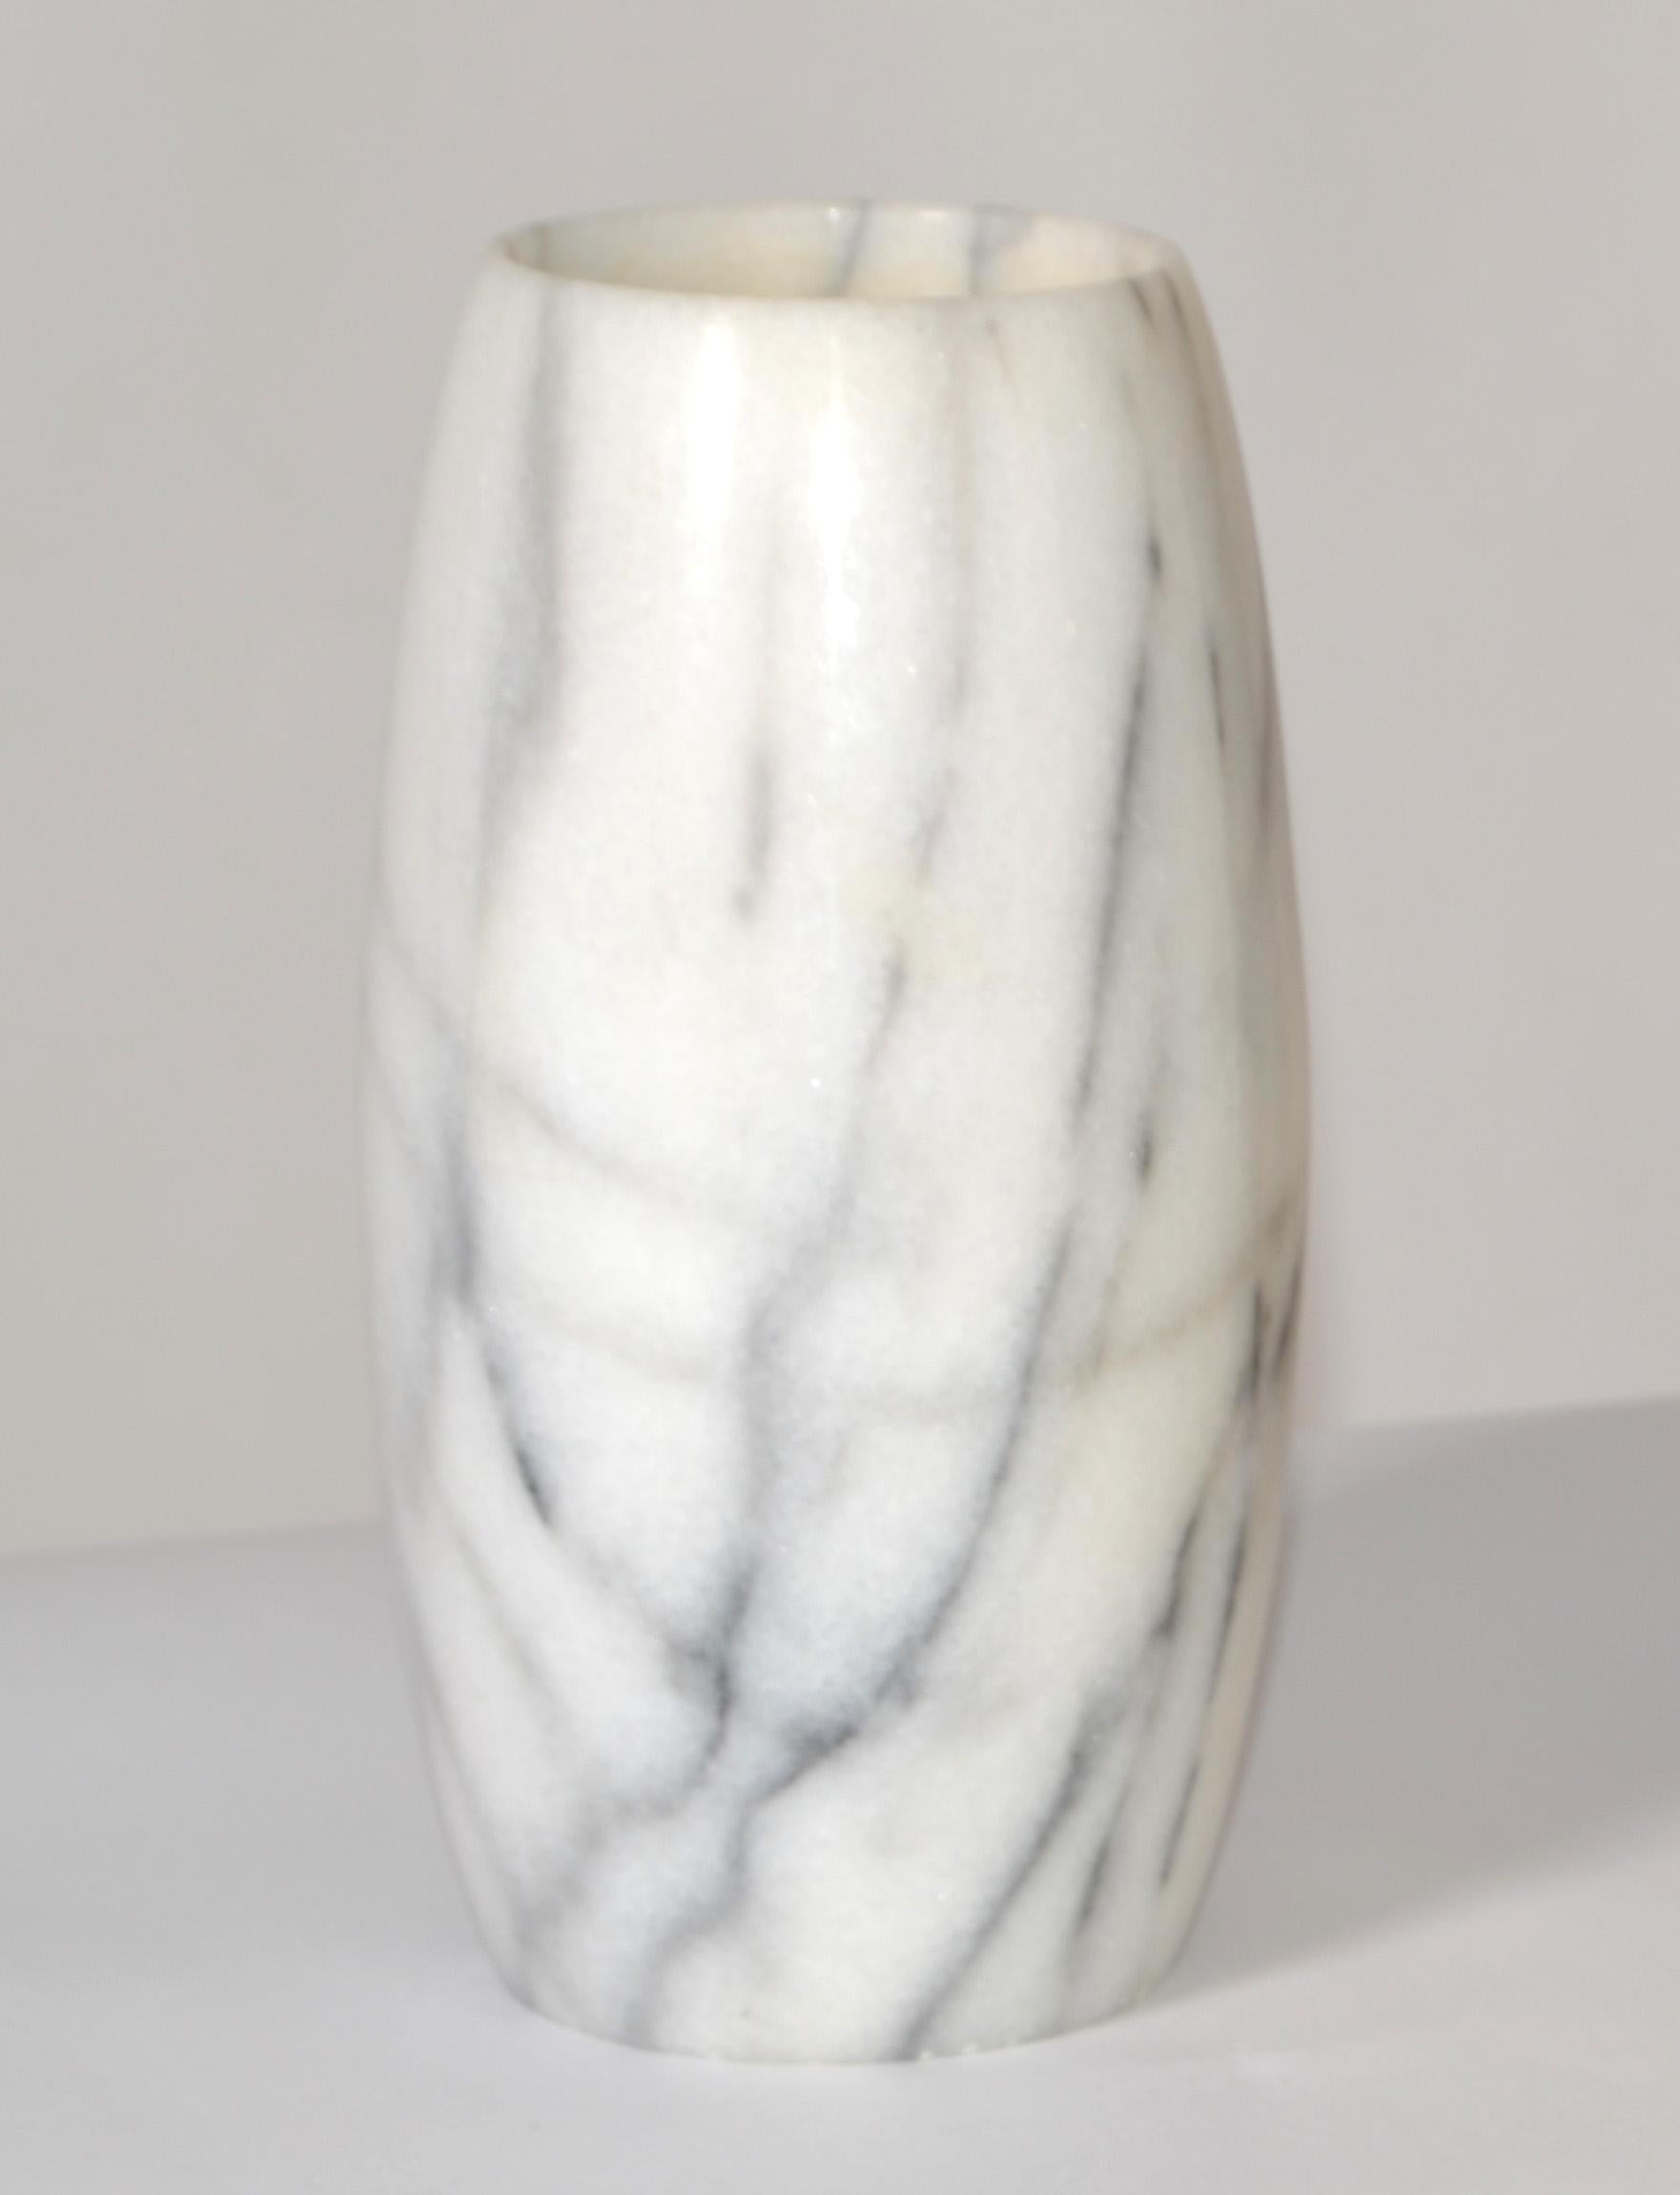 Mitte des 20. Jahrhunderts Moderne handgeschnitzte Vase aus geädertem weißem Carrara-Marmor, Gefäß aus Italien.
Diese Vase ist erstaunlich gut verarbeitet, sehr dekorativ auf einem klassischen italienischen Tisch.
In sehr gutem Vintage-Zustand mit